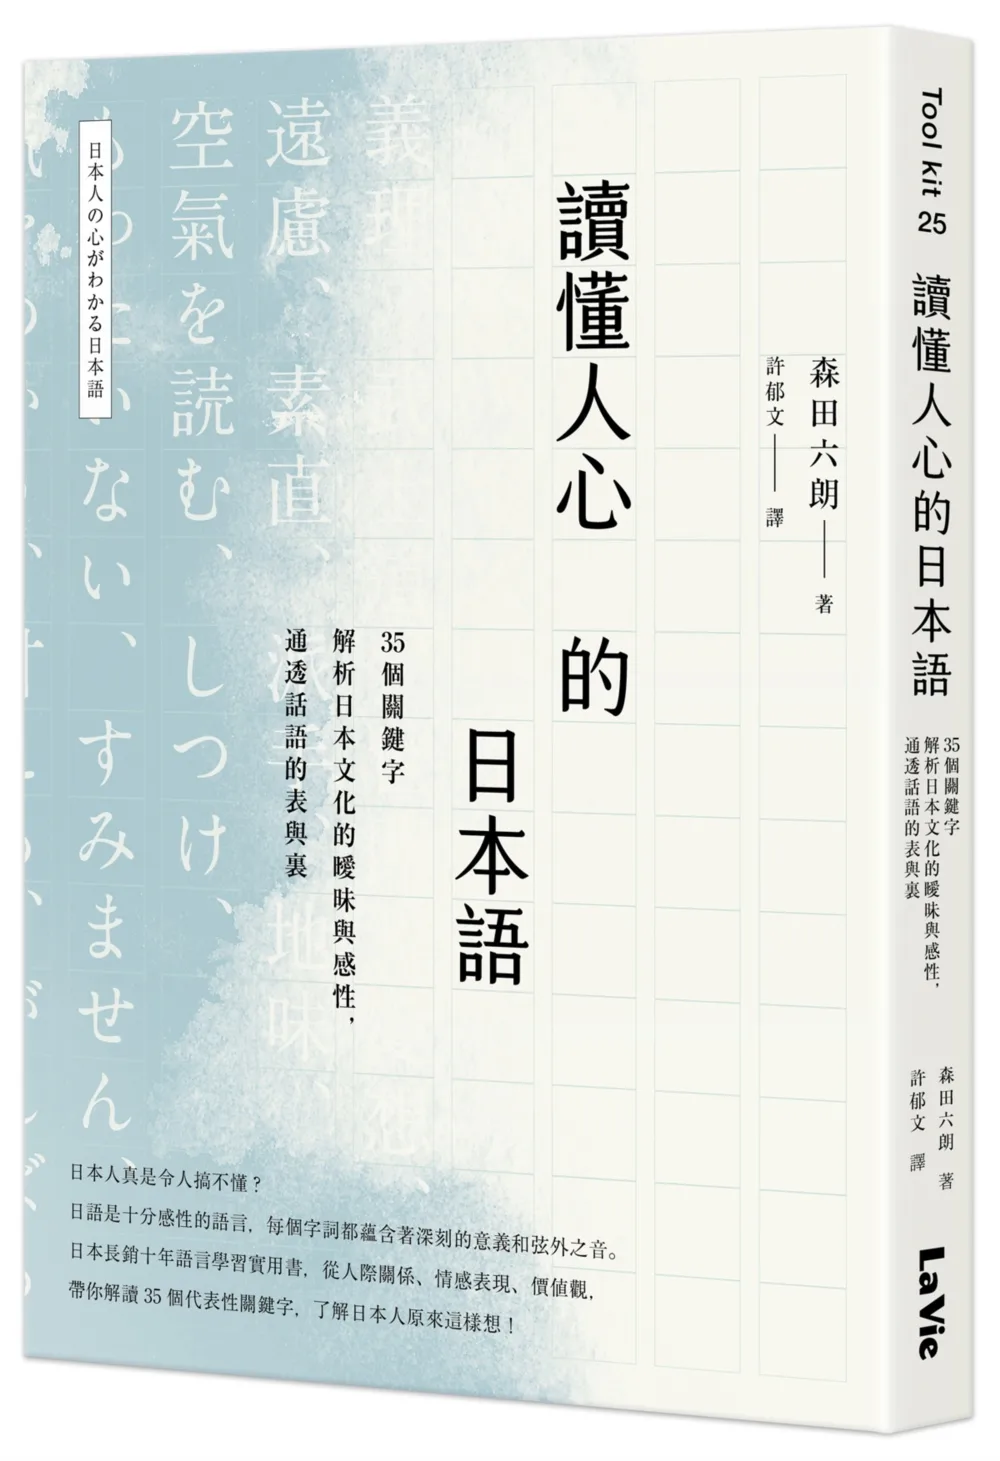 讀懂人心的日本語：35個關鍵字解析日本文化的曖昧與感性，通透話語的表與裏